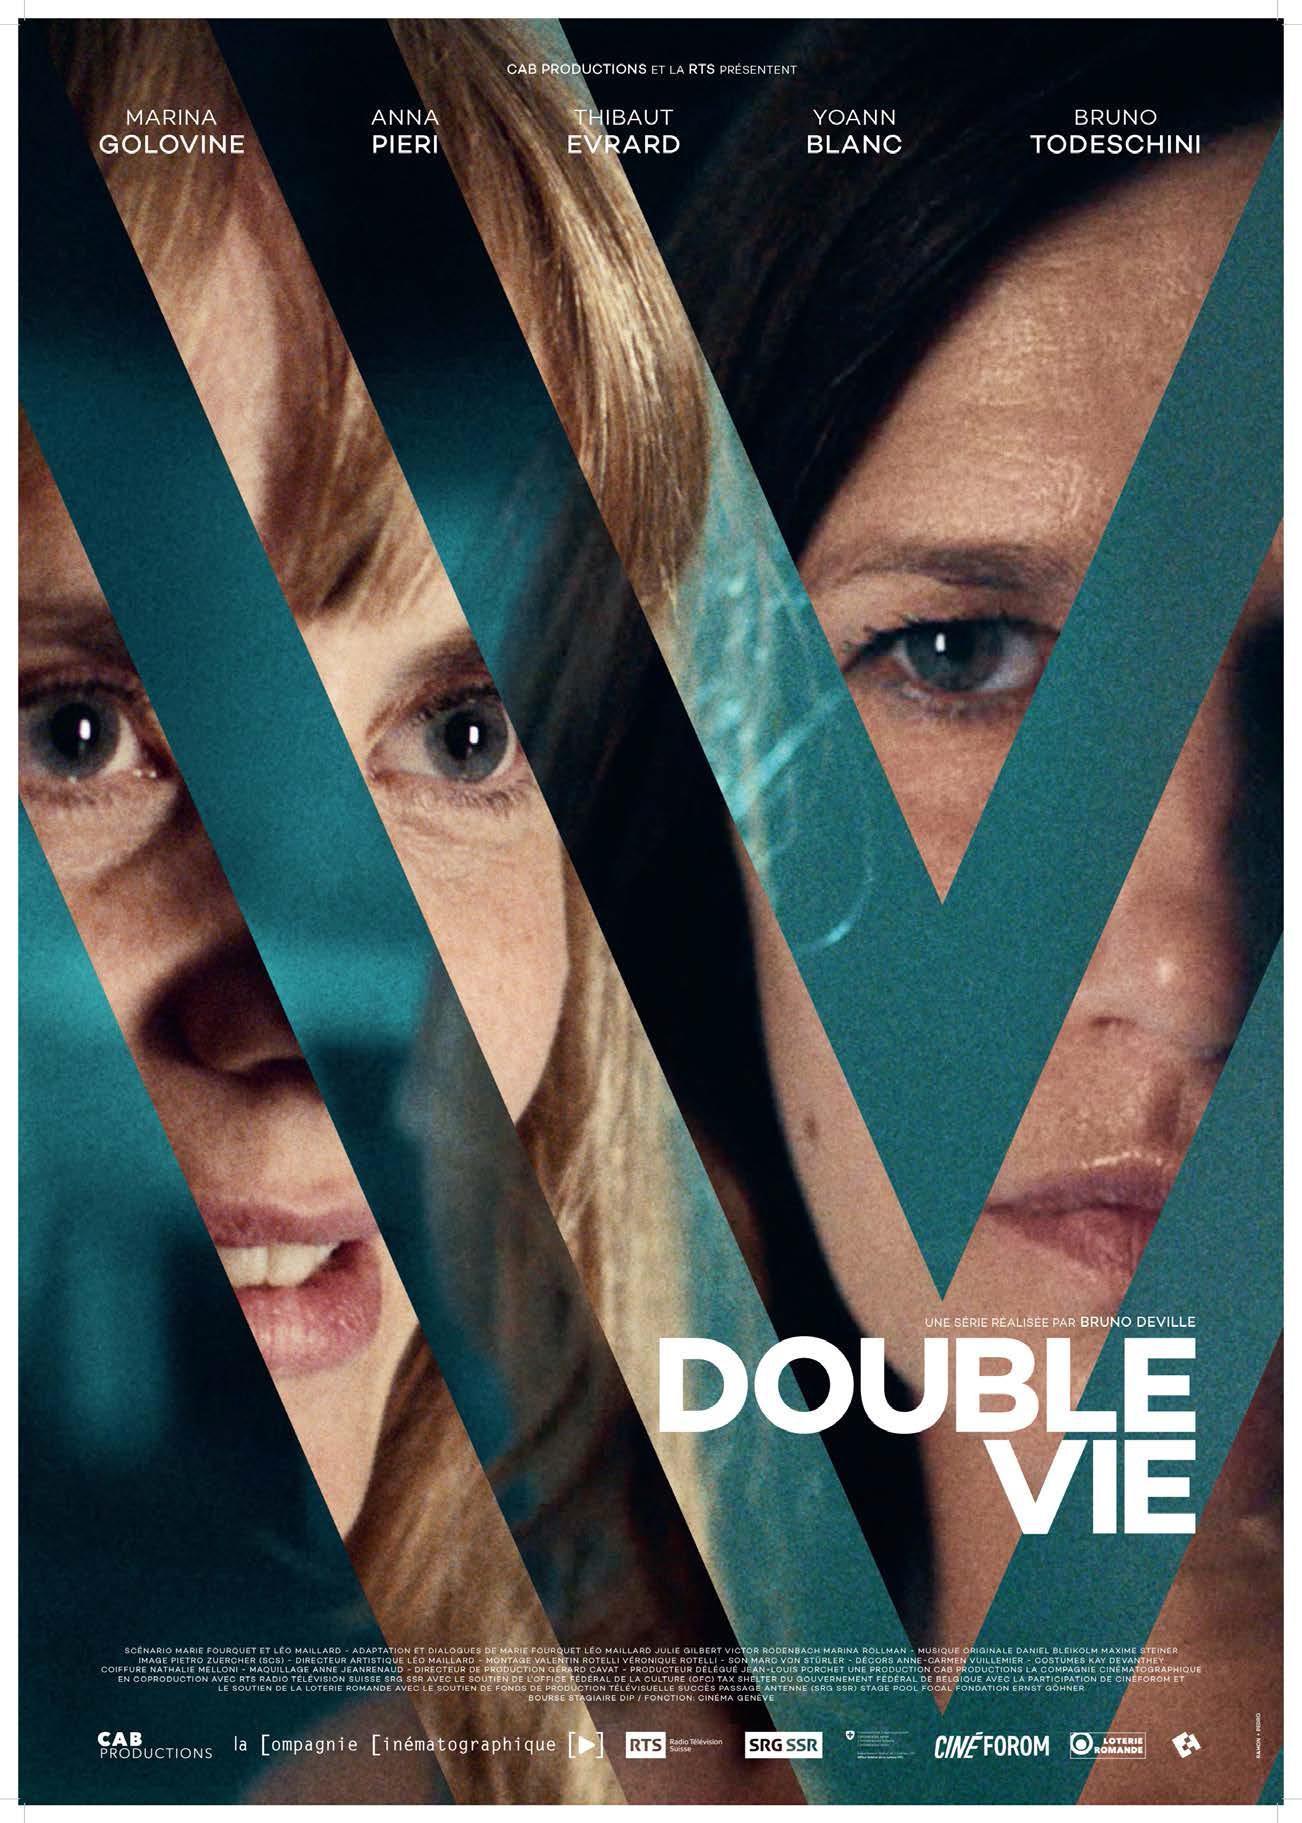 L'affiche de la série "Double vie", réalisée par Bruno Deville. [CAB Productions - RTS]